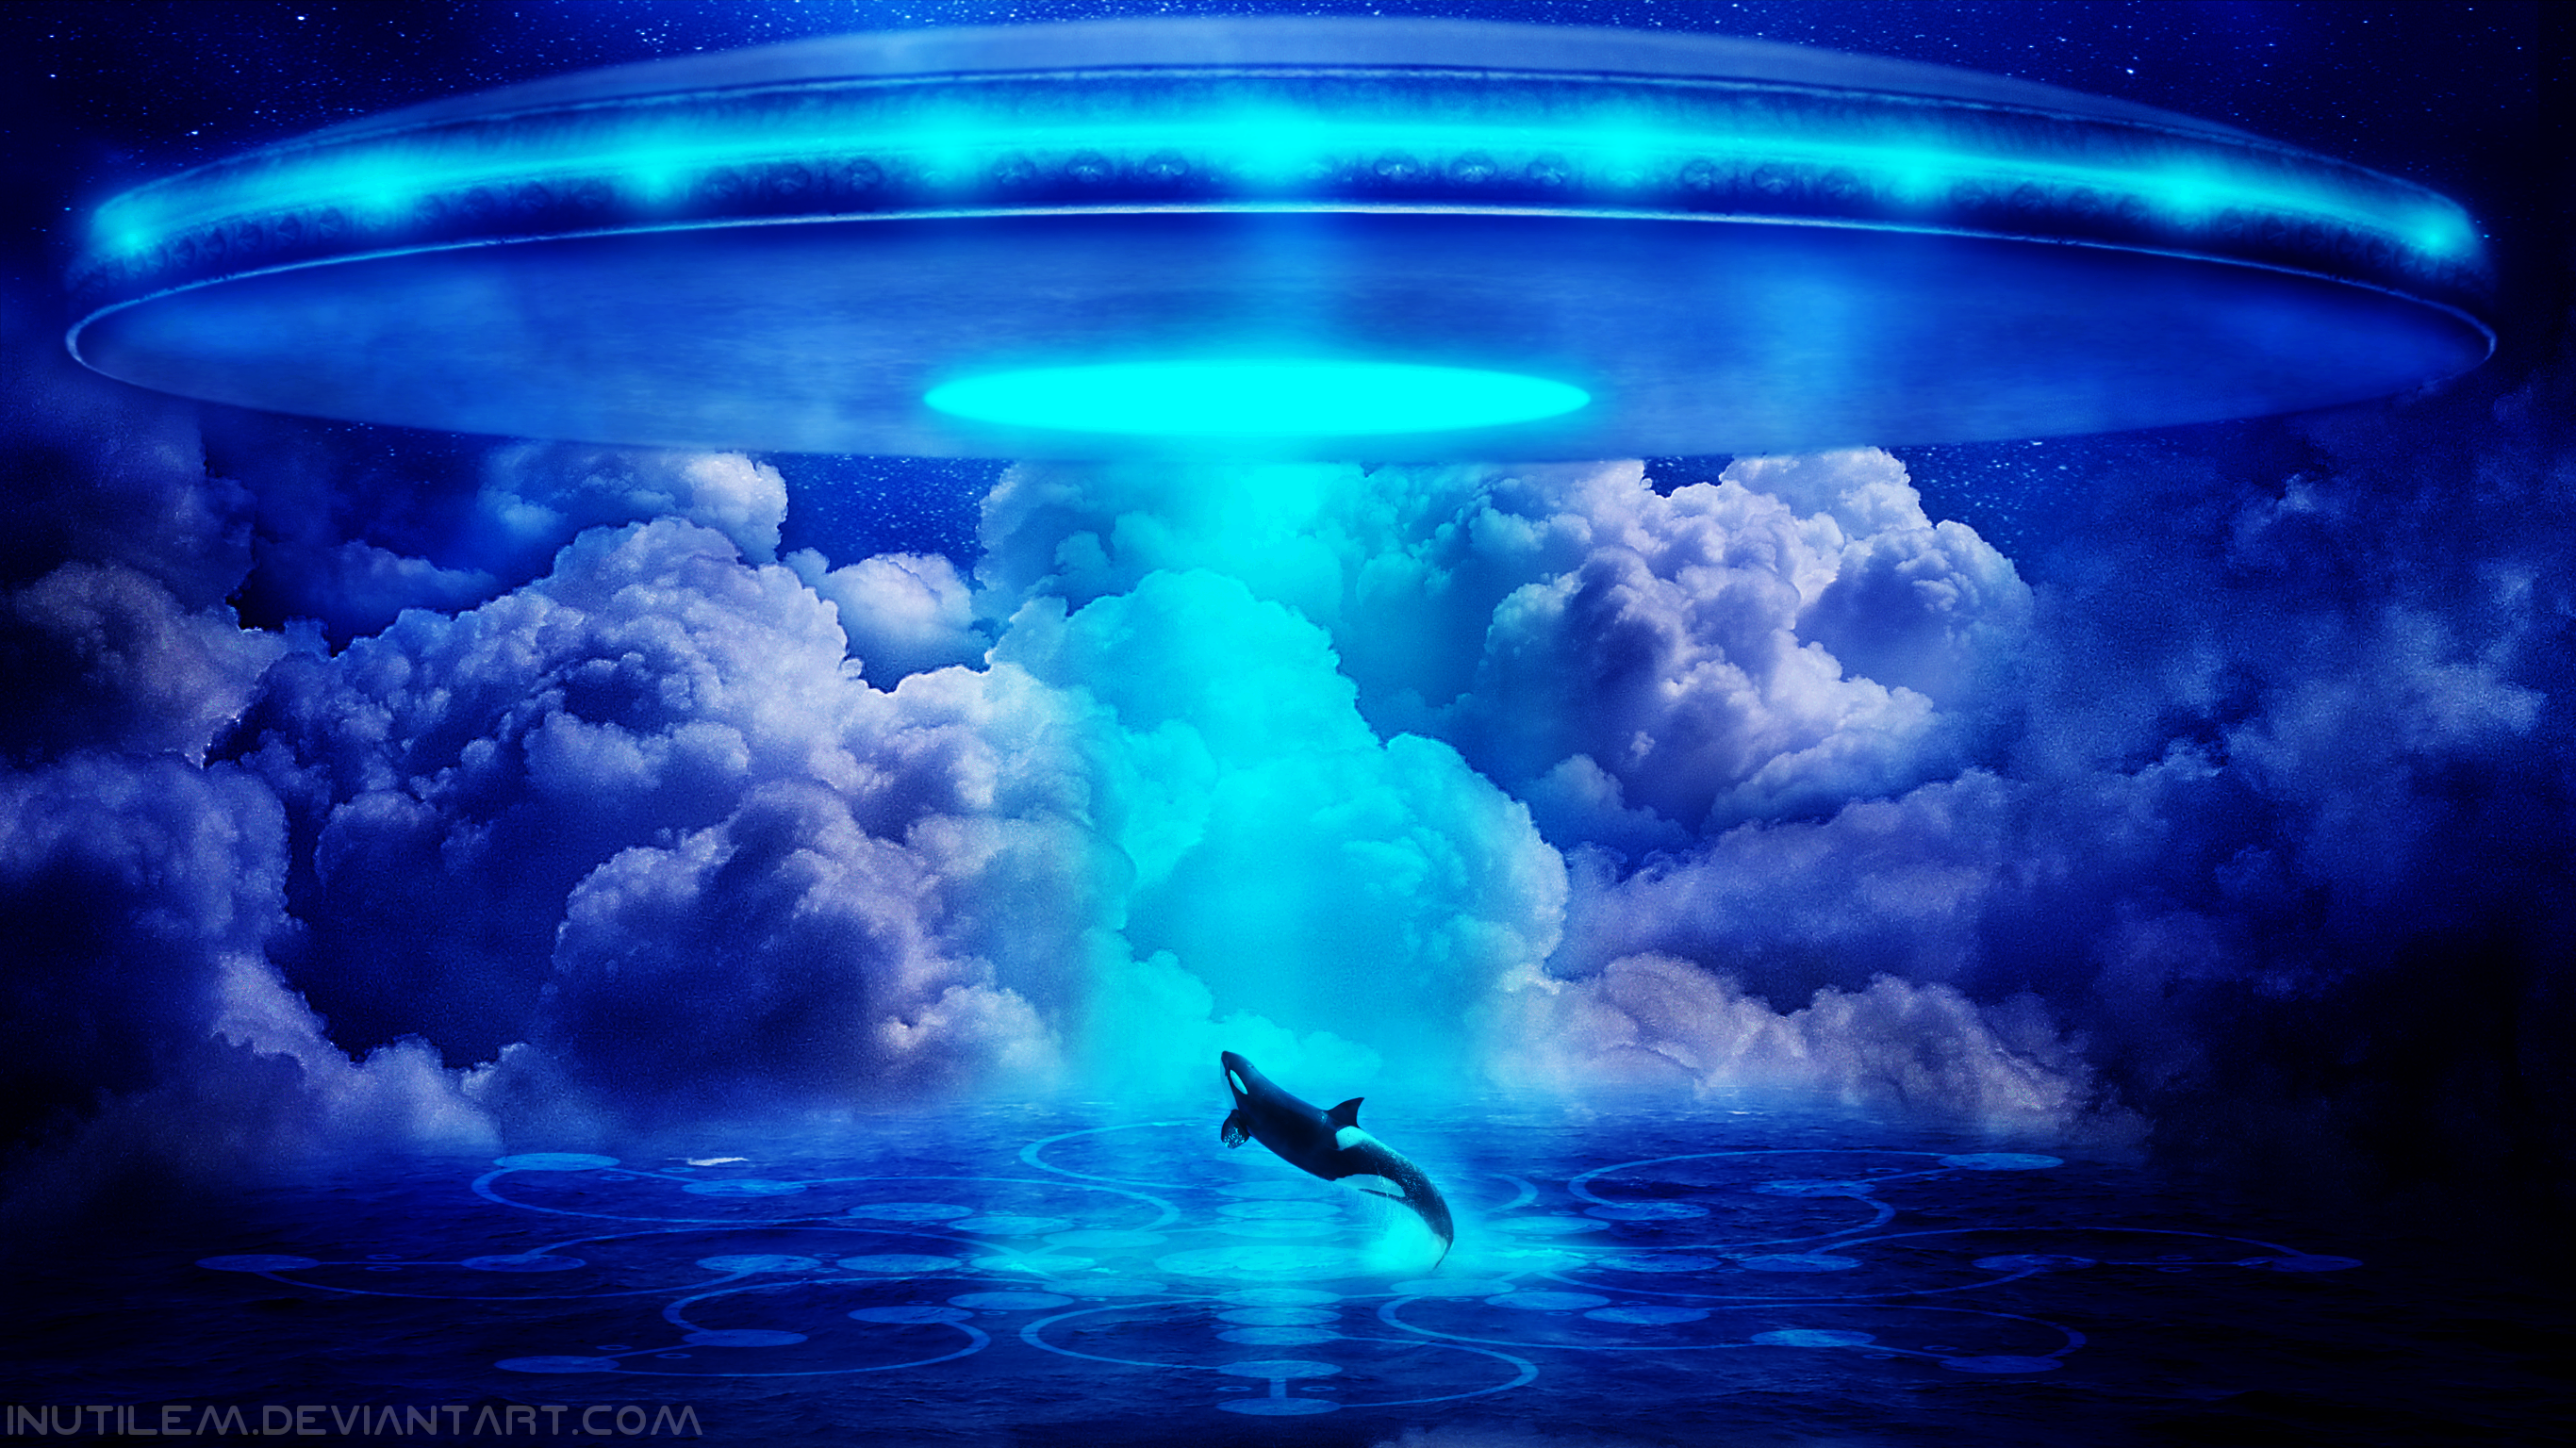 ufo 벽지,하늘,물,해양 생물학,강청색,세계